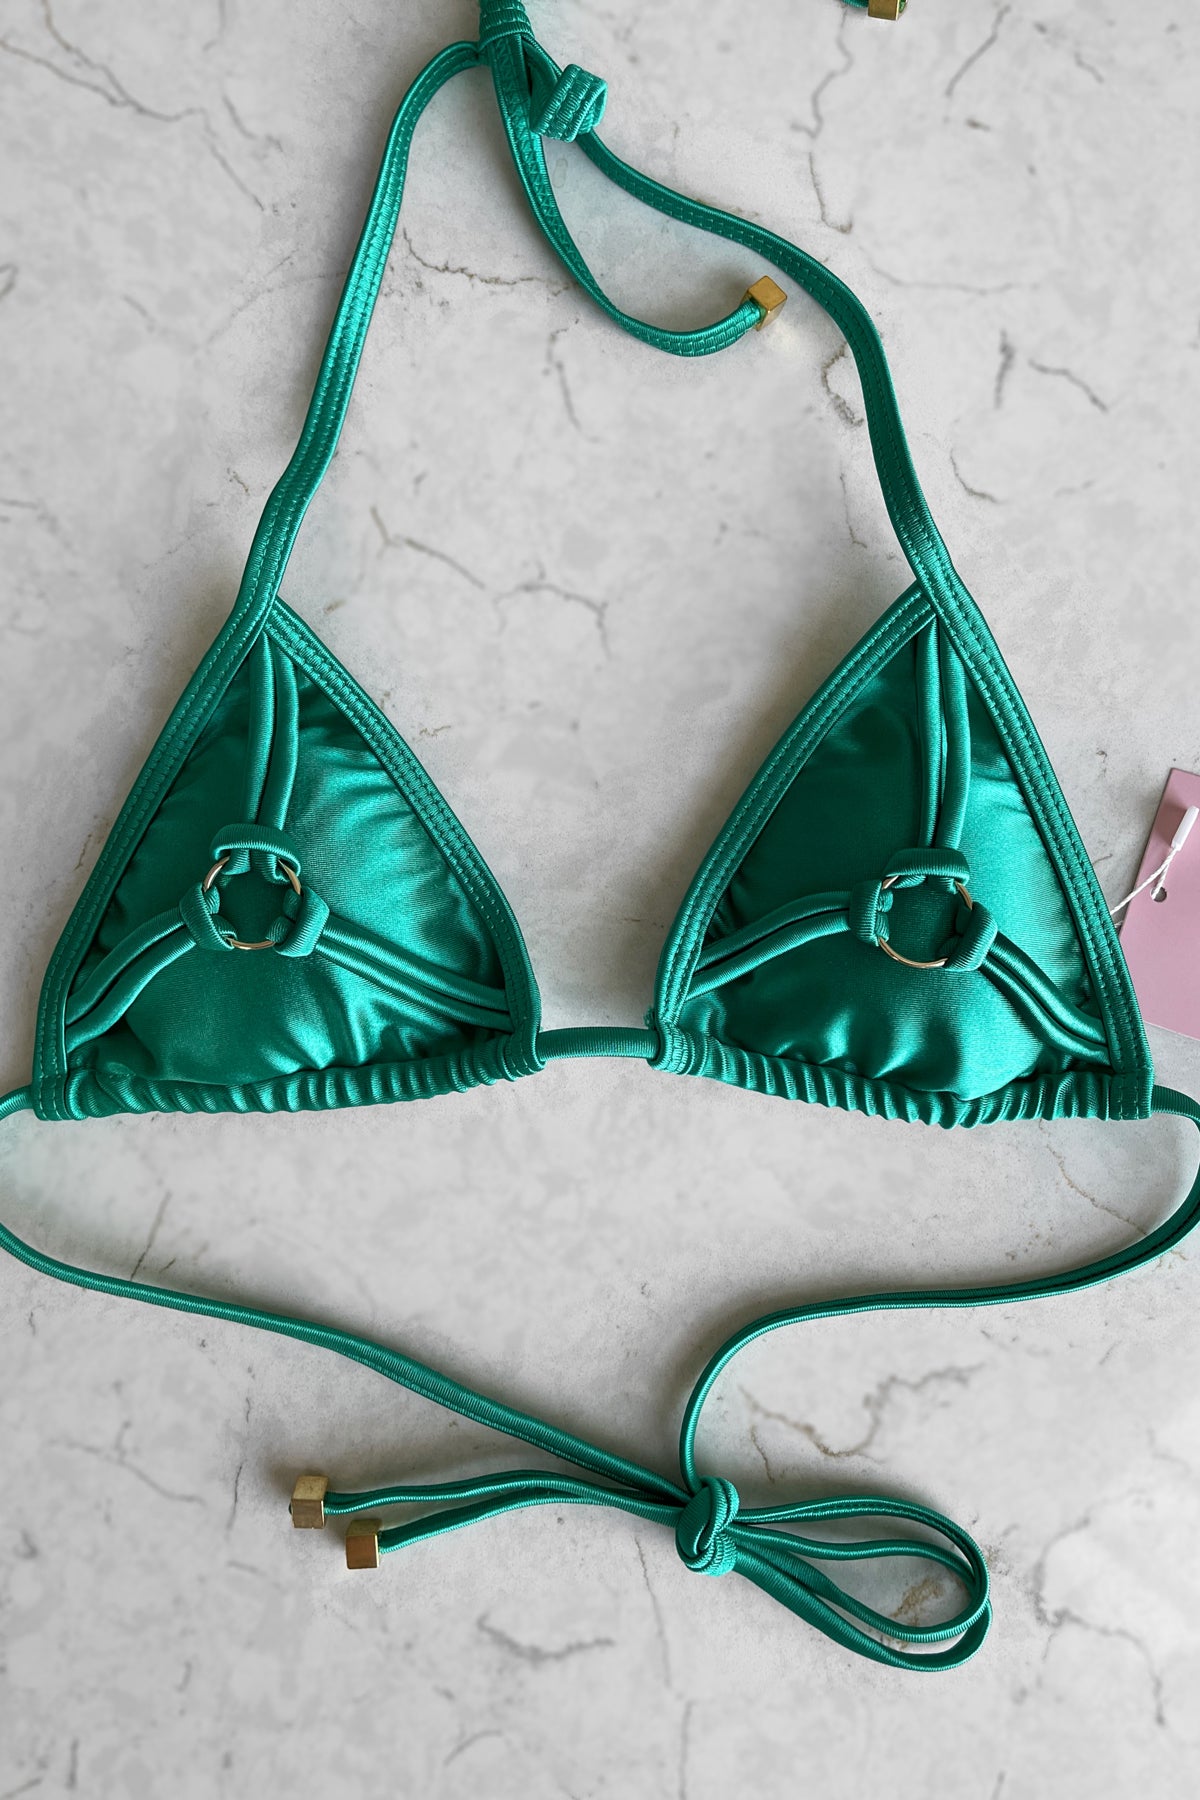 Discovered Triangle Bikini Top - Ocean Green